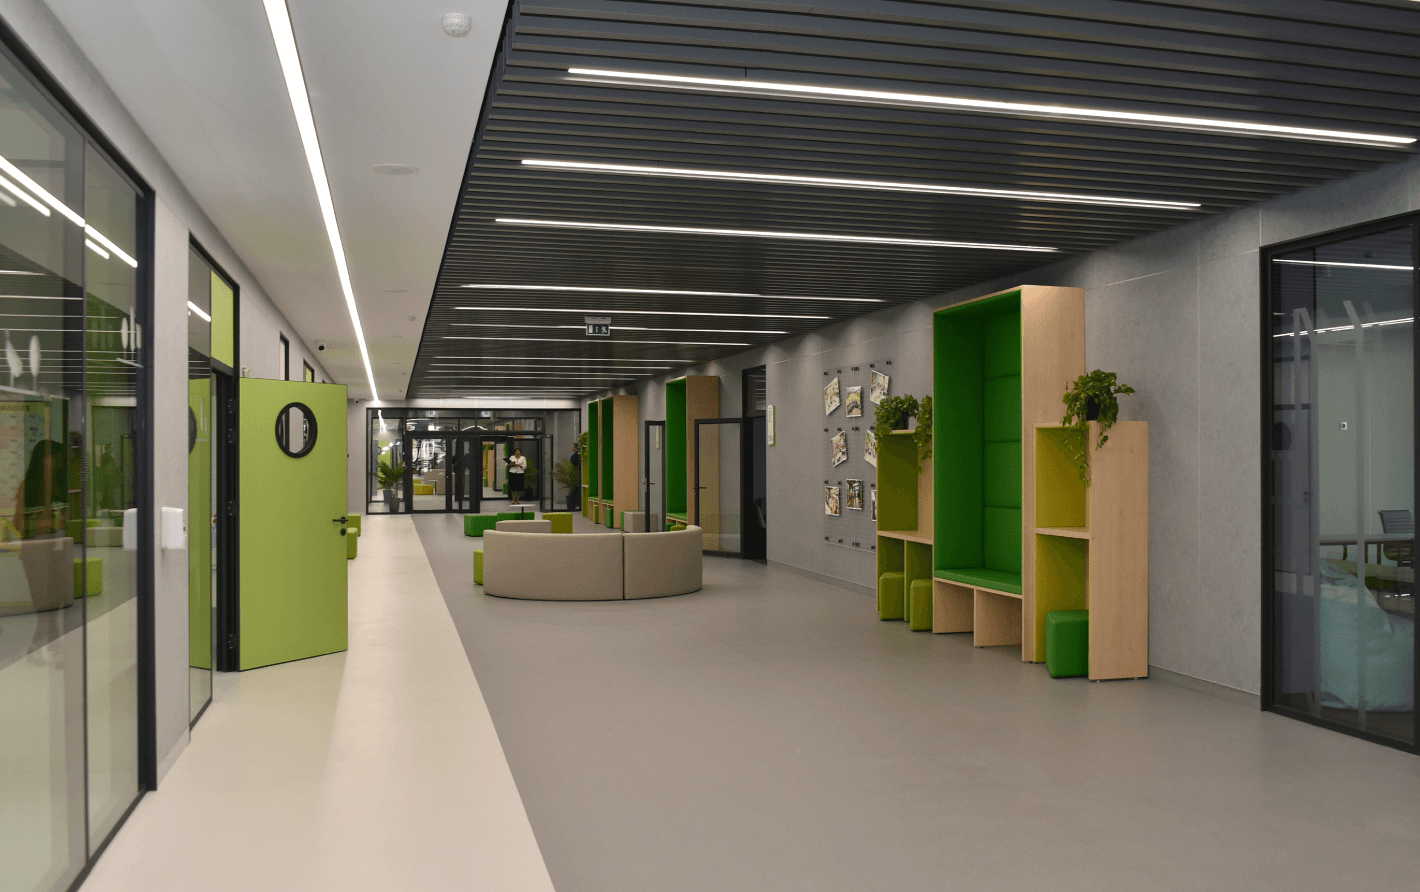 коридоры и лестницы - проектирование освещения от компании Световые Технологии